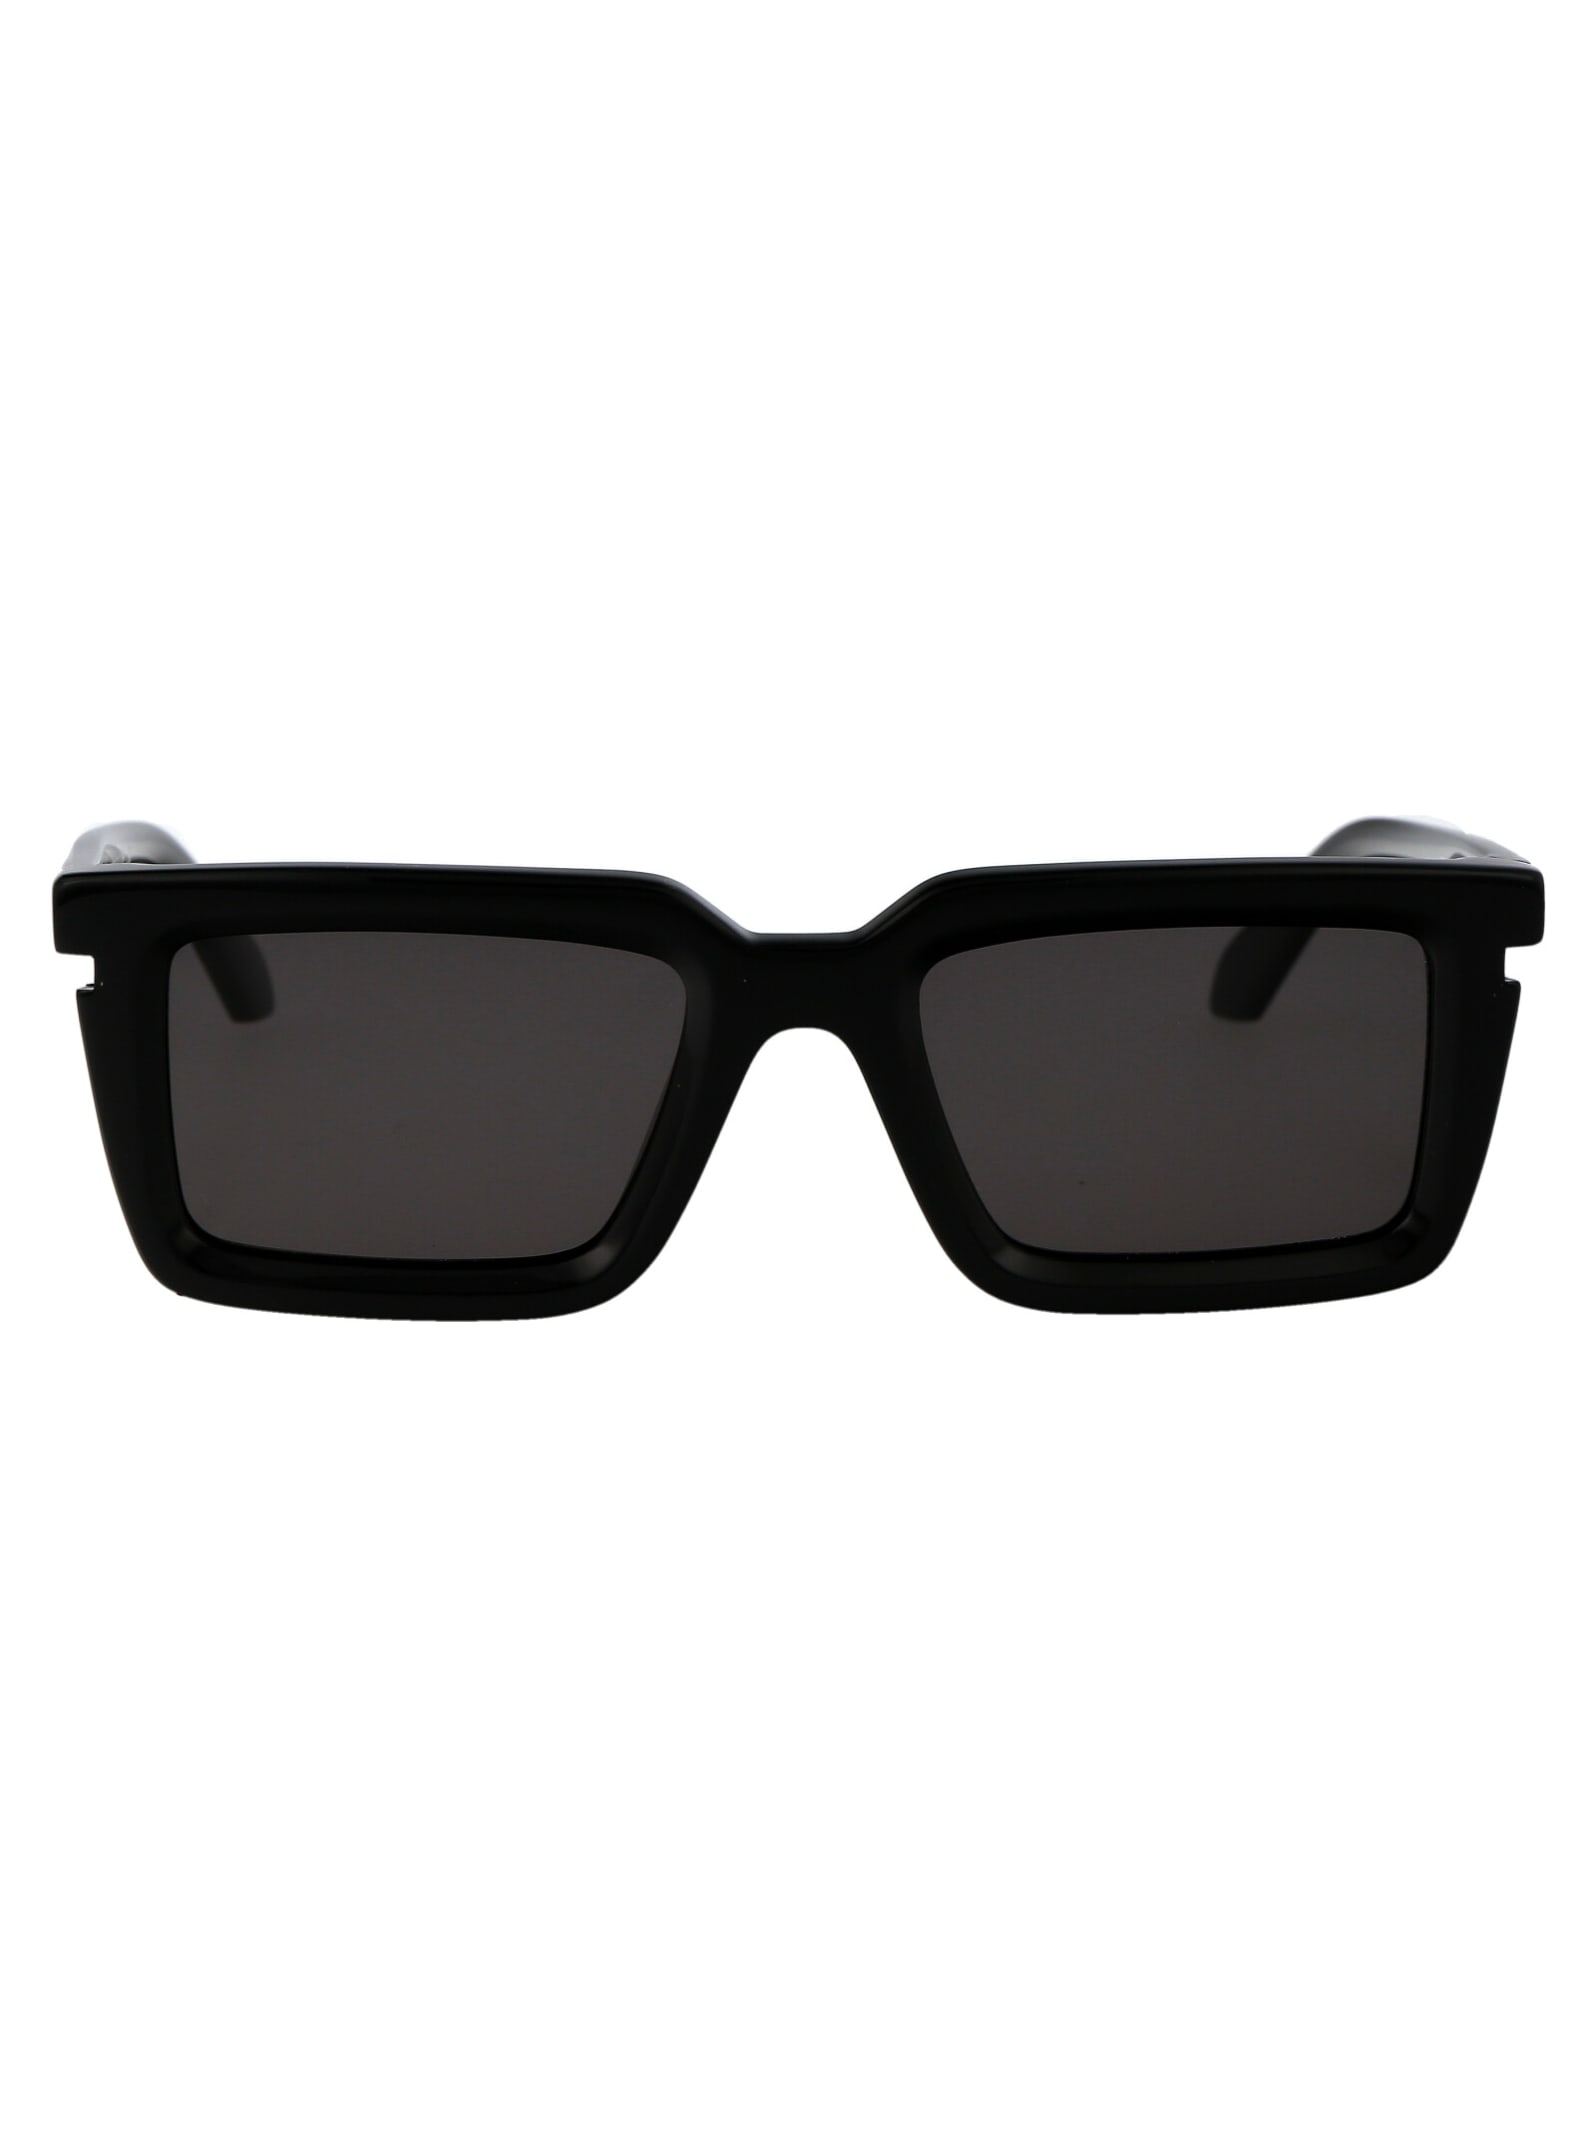 Off-White Tucson Sunglasses